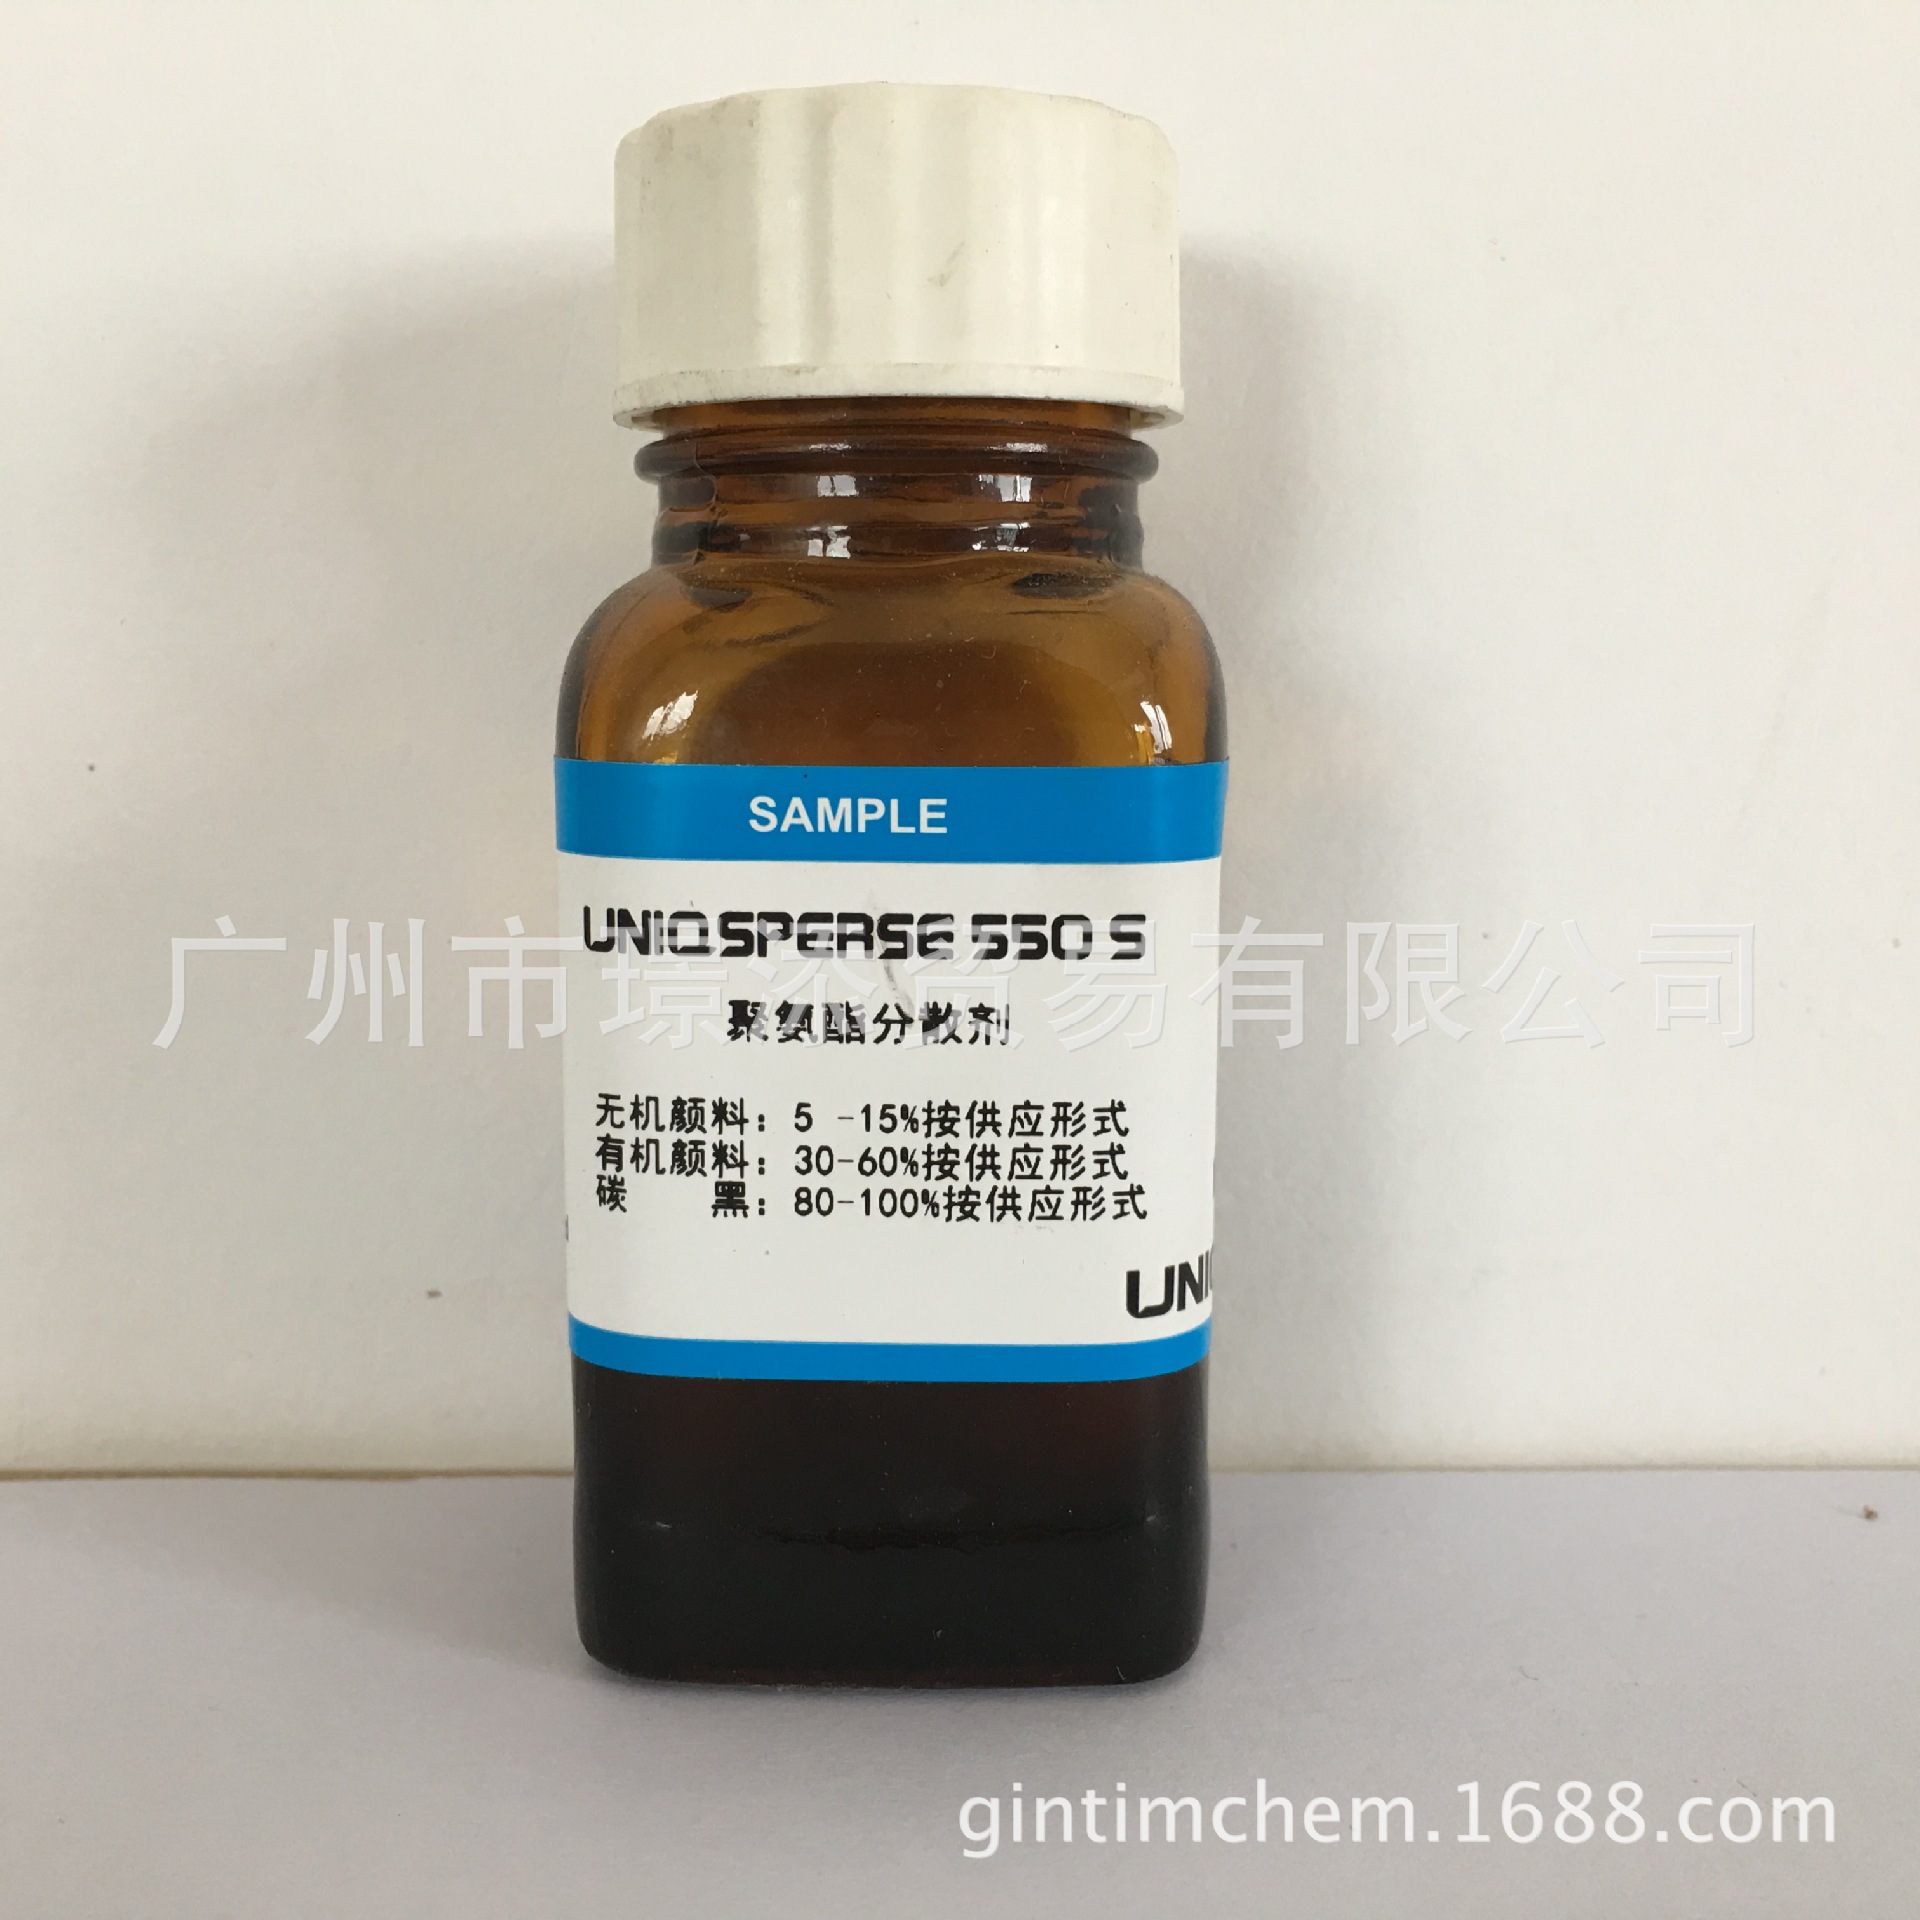 销售 聚氨酯改性分散剂 UNIQSPERSE 550S 通用环氧阻垢分散剂示例图3